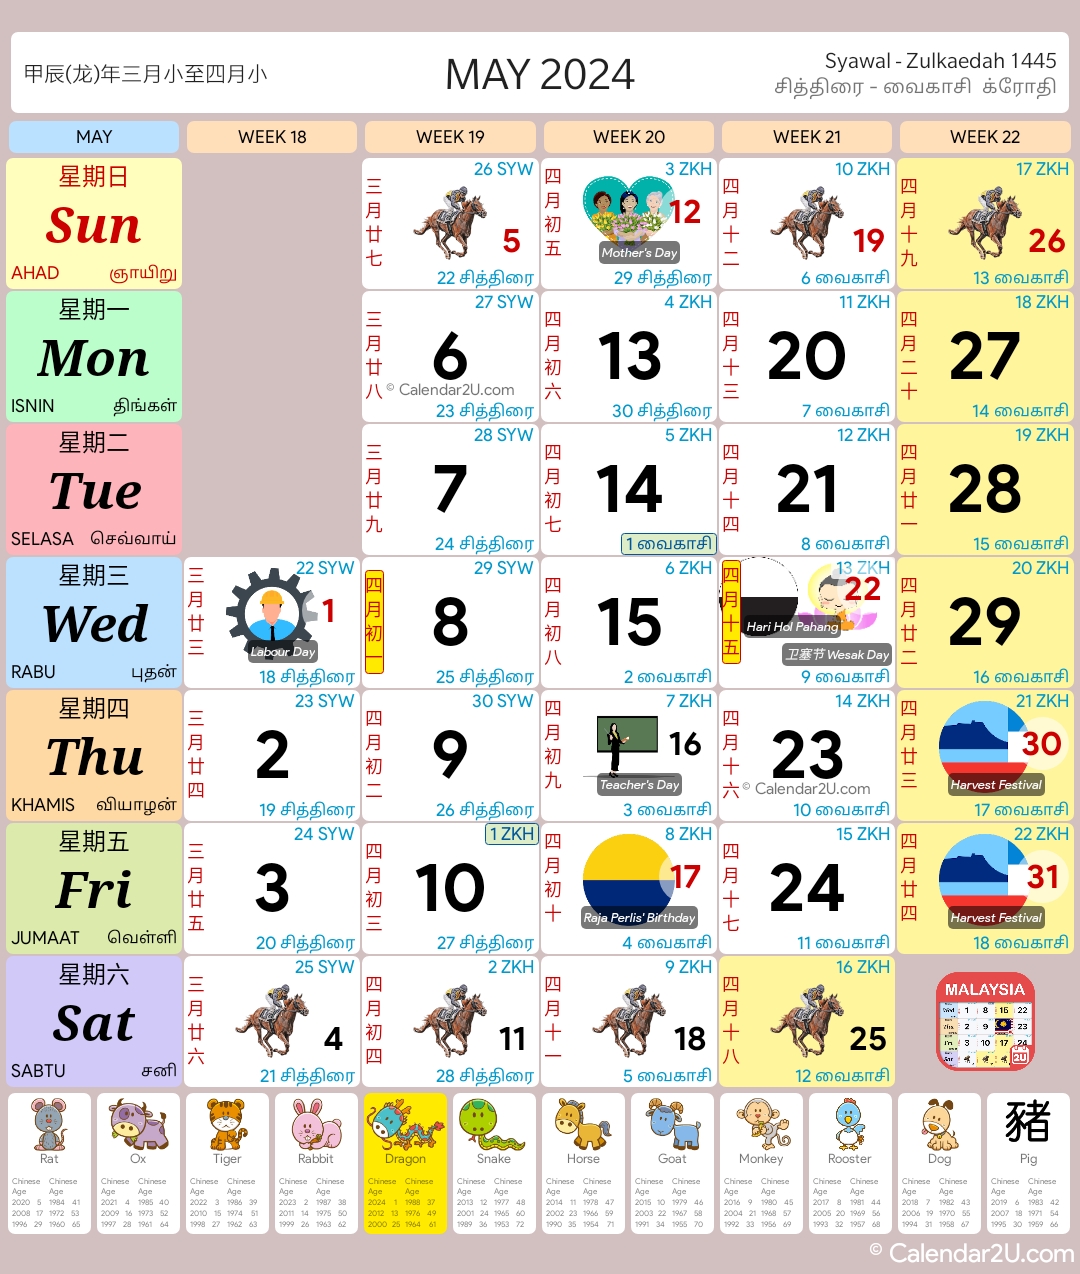 马来西亚 (Malaysia) Calendar